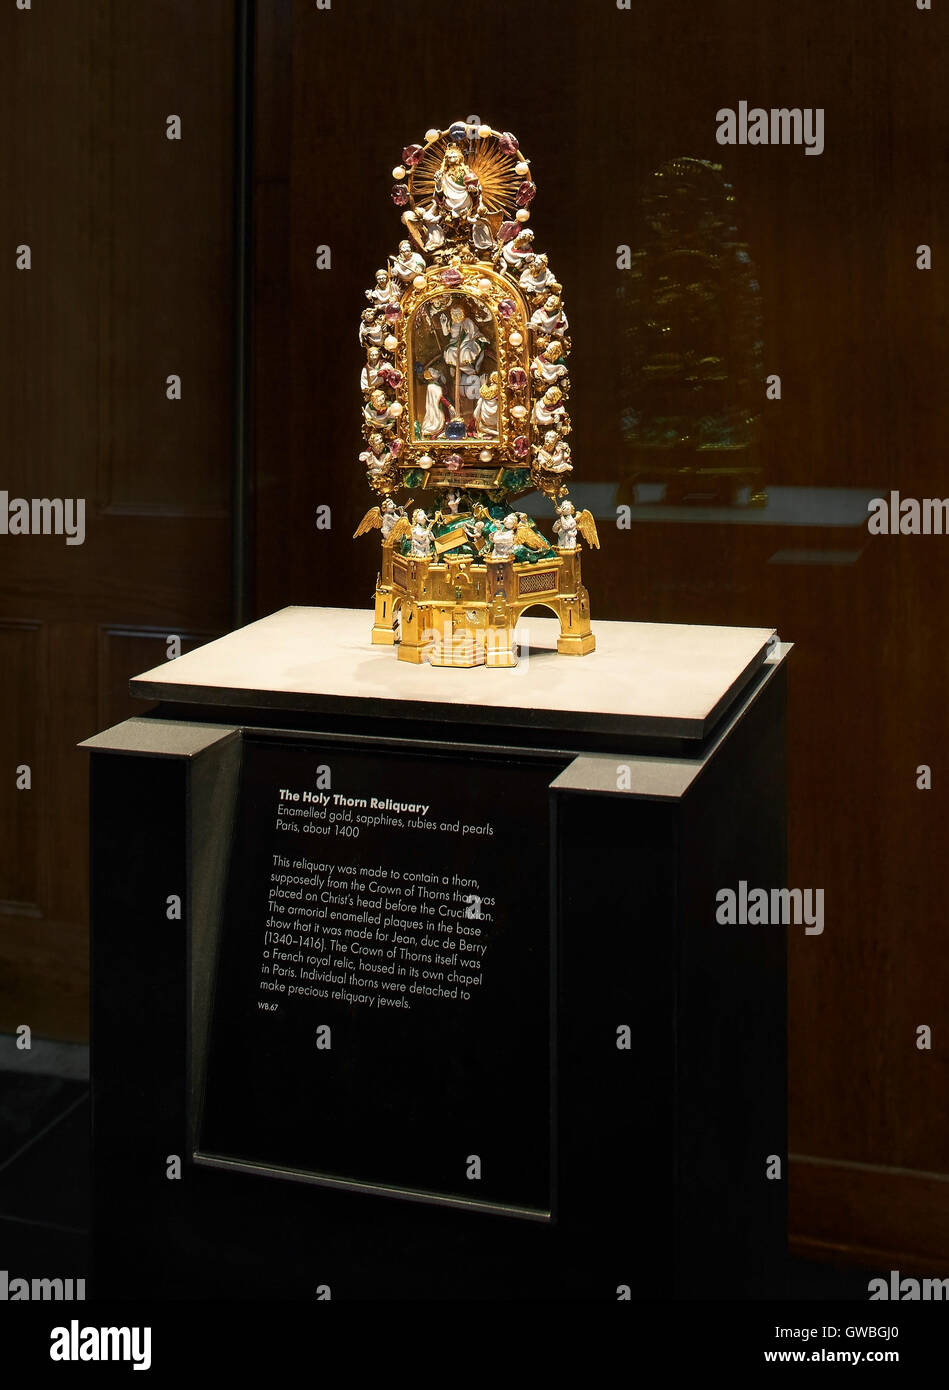 Anzeige der das Reliquiar des Heiligen Dorn. Waddesdon Vermächtnis Galerie im British Museum, London, Vereinigtes Königreich. Architekt: Stanton Williams, 2015. Stockfoto